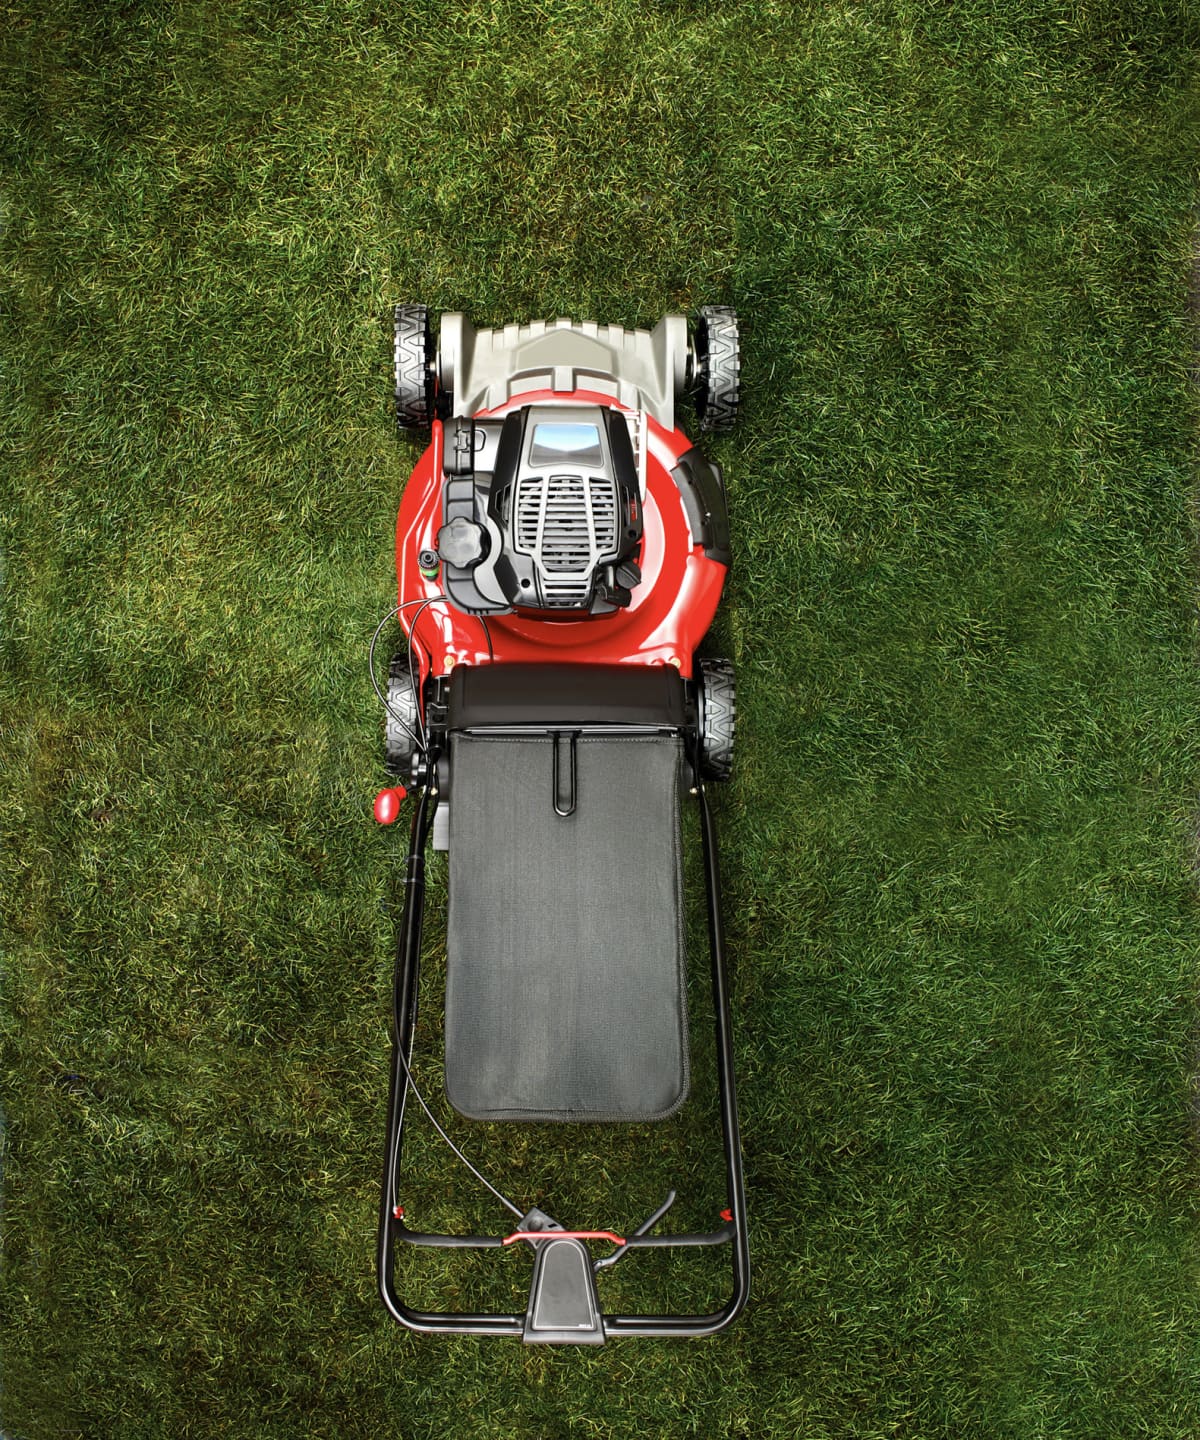 Lawn mower in the backyard